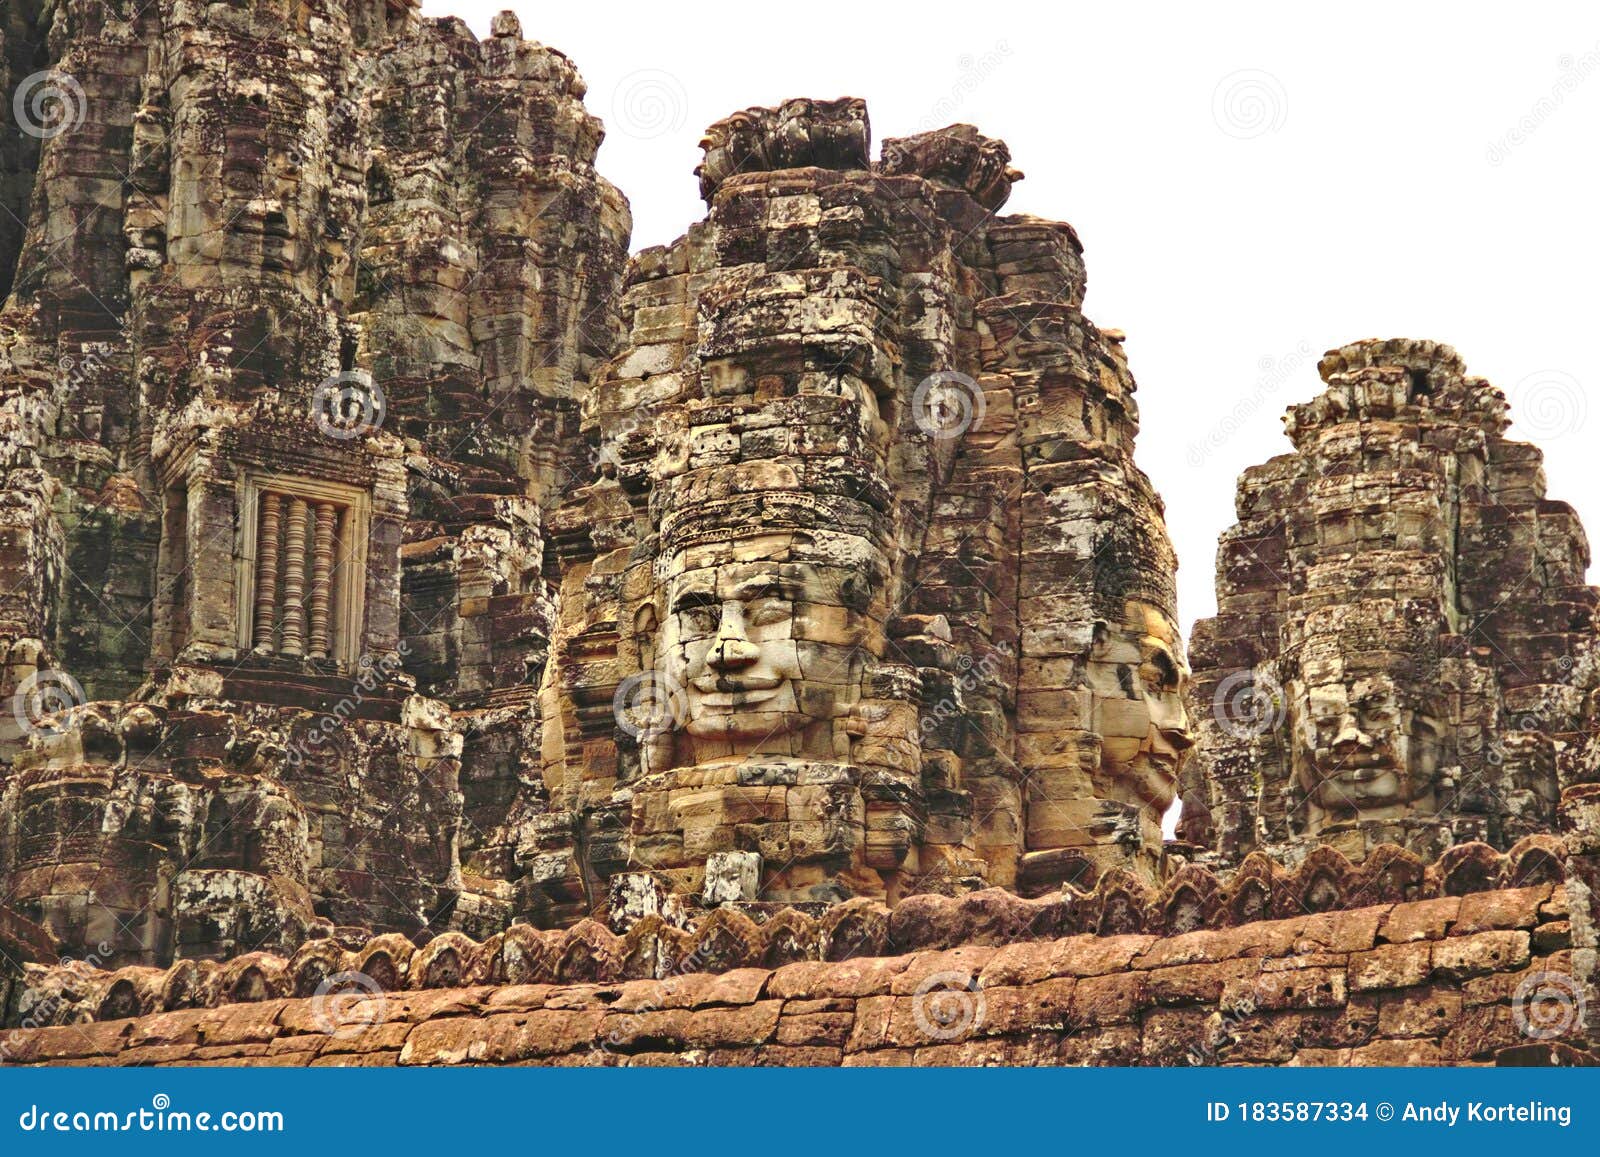 Stone Faces Of Angkor Thom Bayon Angkor Wat Cambodia Jayavarman Vii Buddha Stock Photo Image Of Hindu Ruin